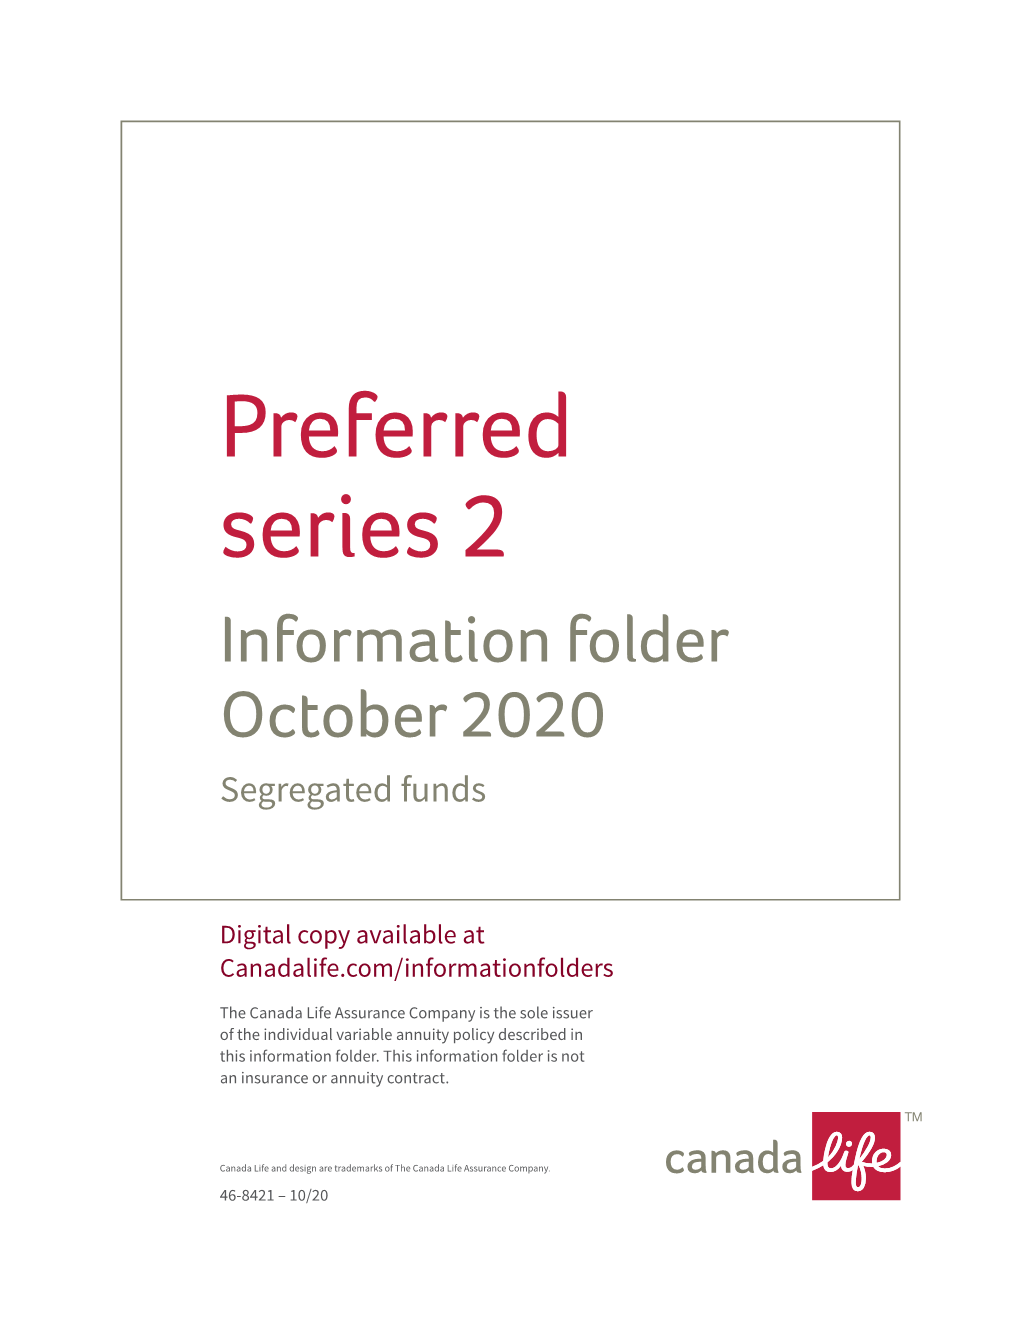 Preferred Series 2 Information Folder October 2020 Segregated Funds